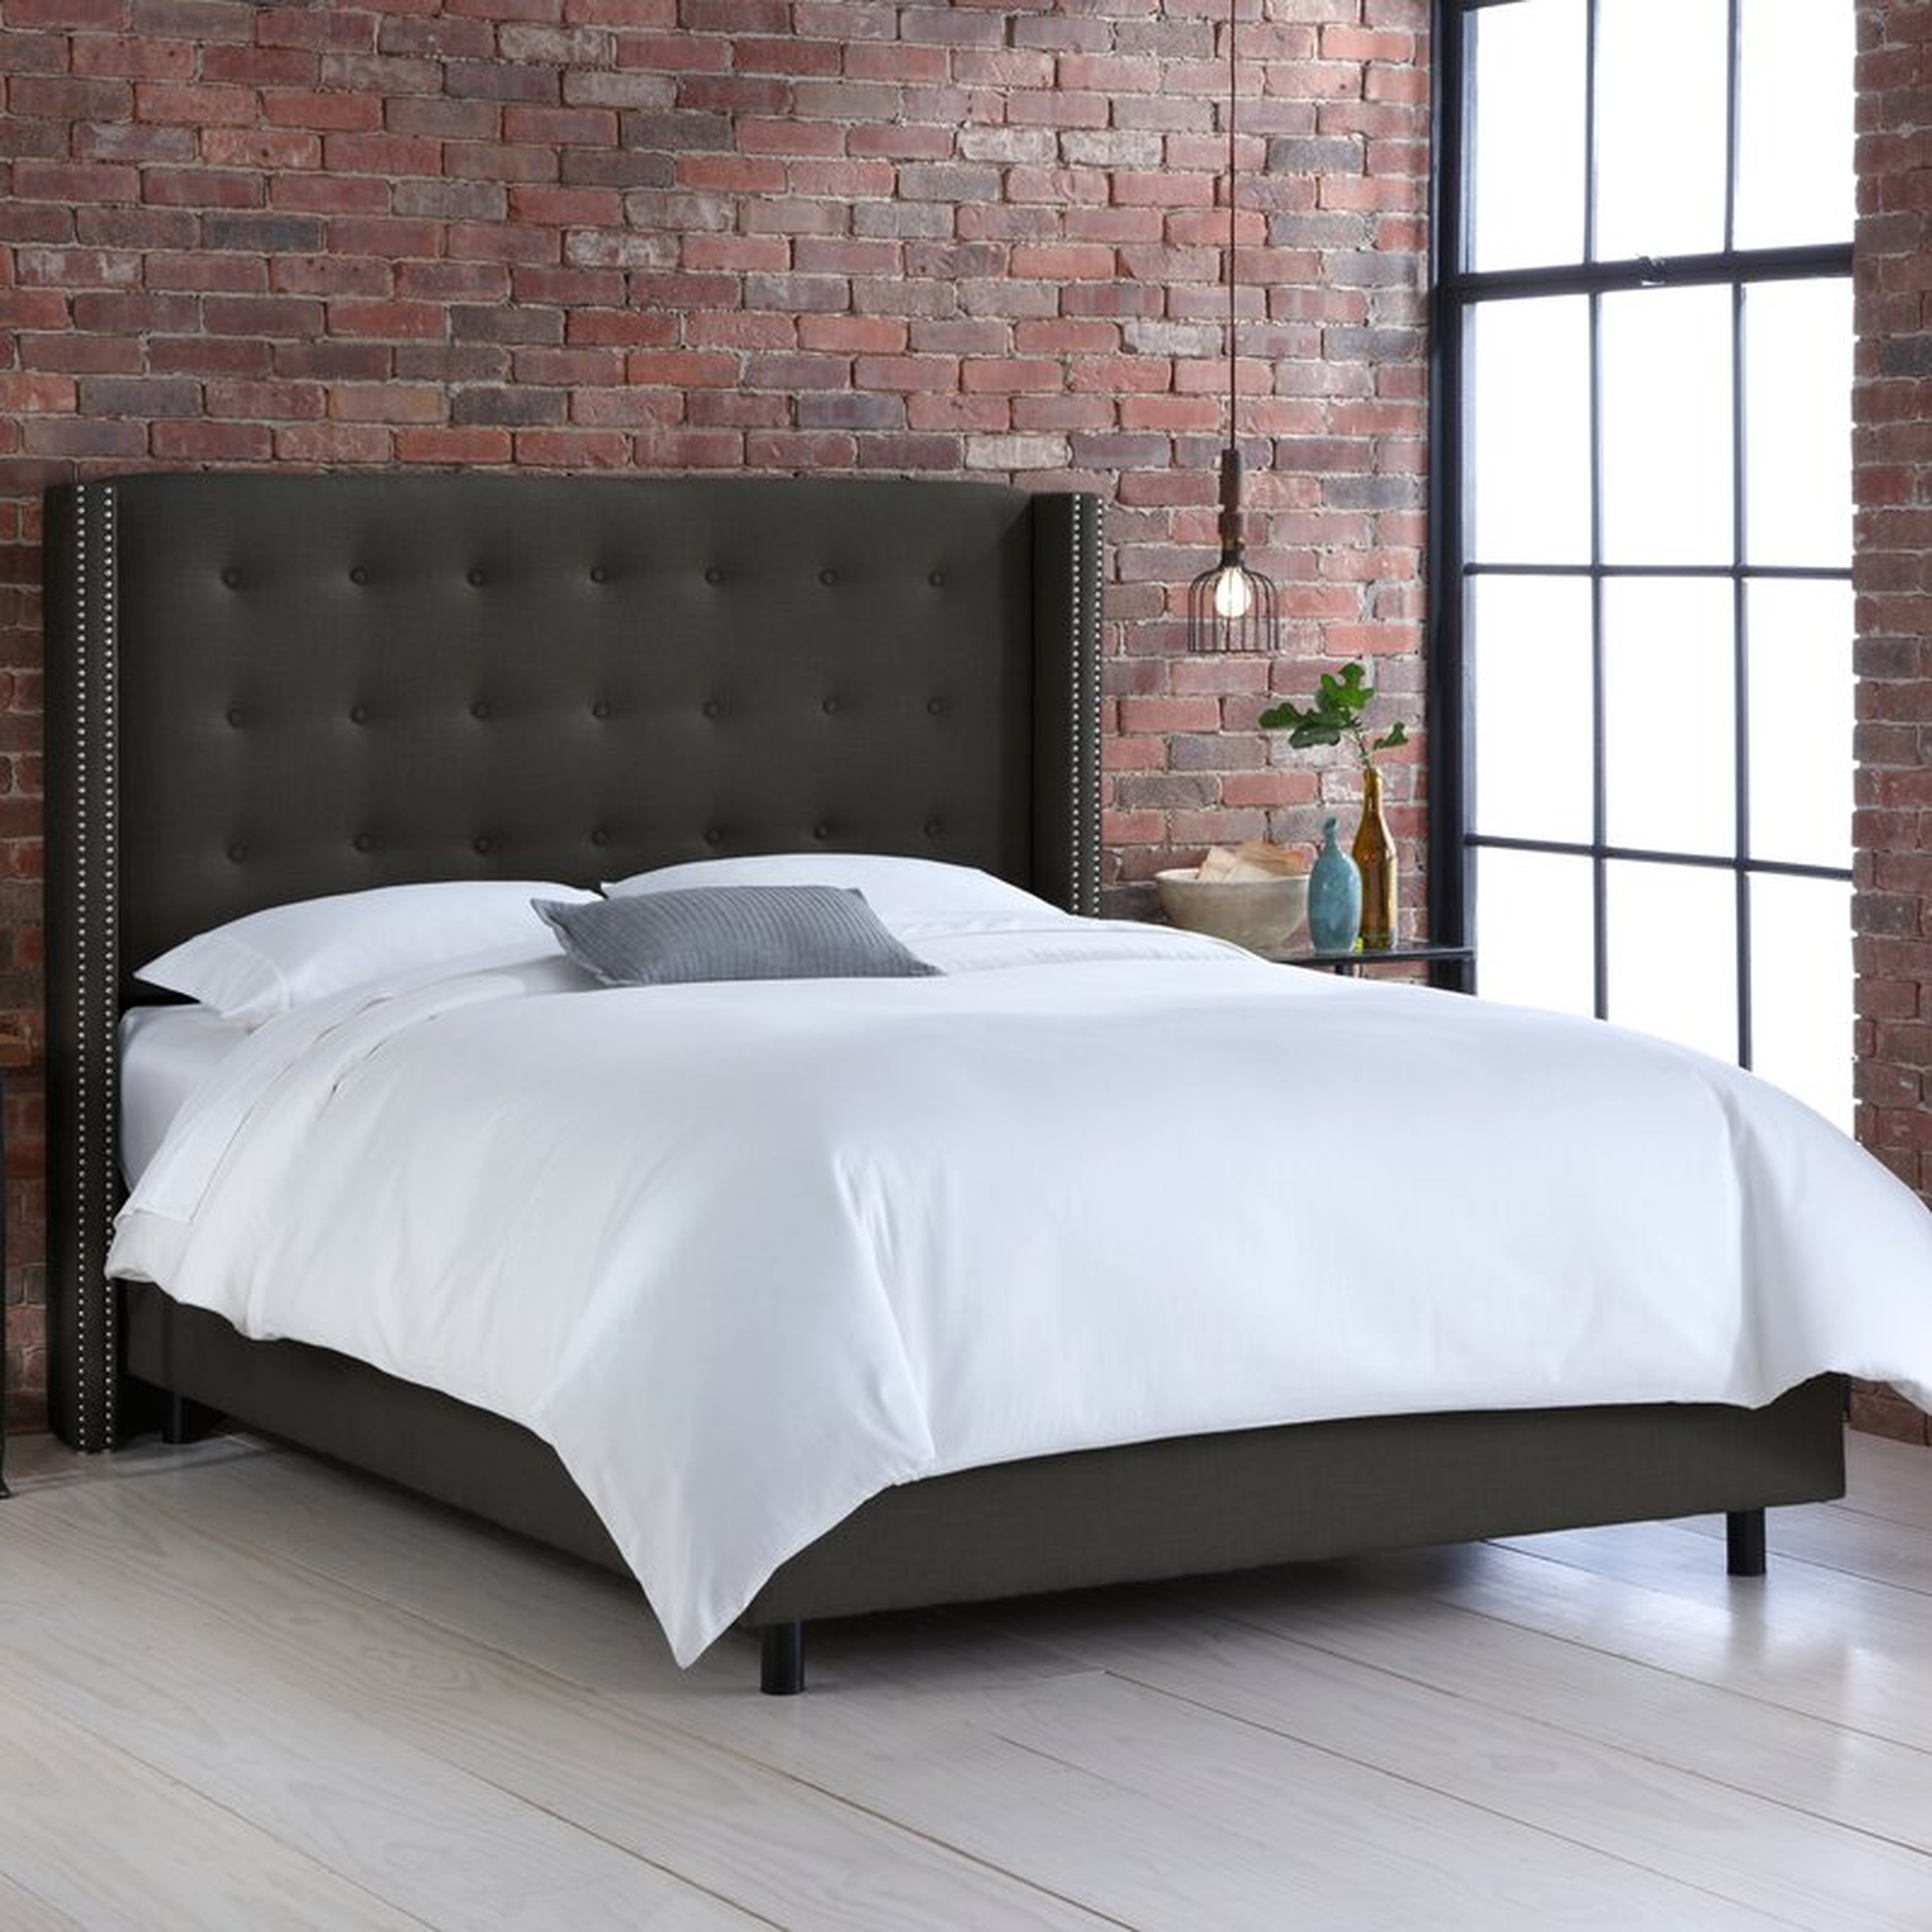 Davet Upholstered Standard Bed - Wayfair